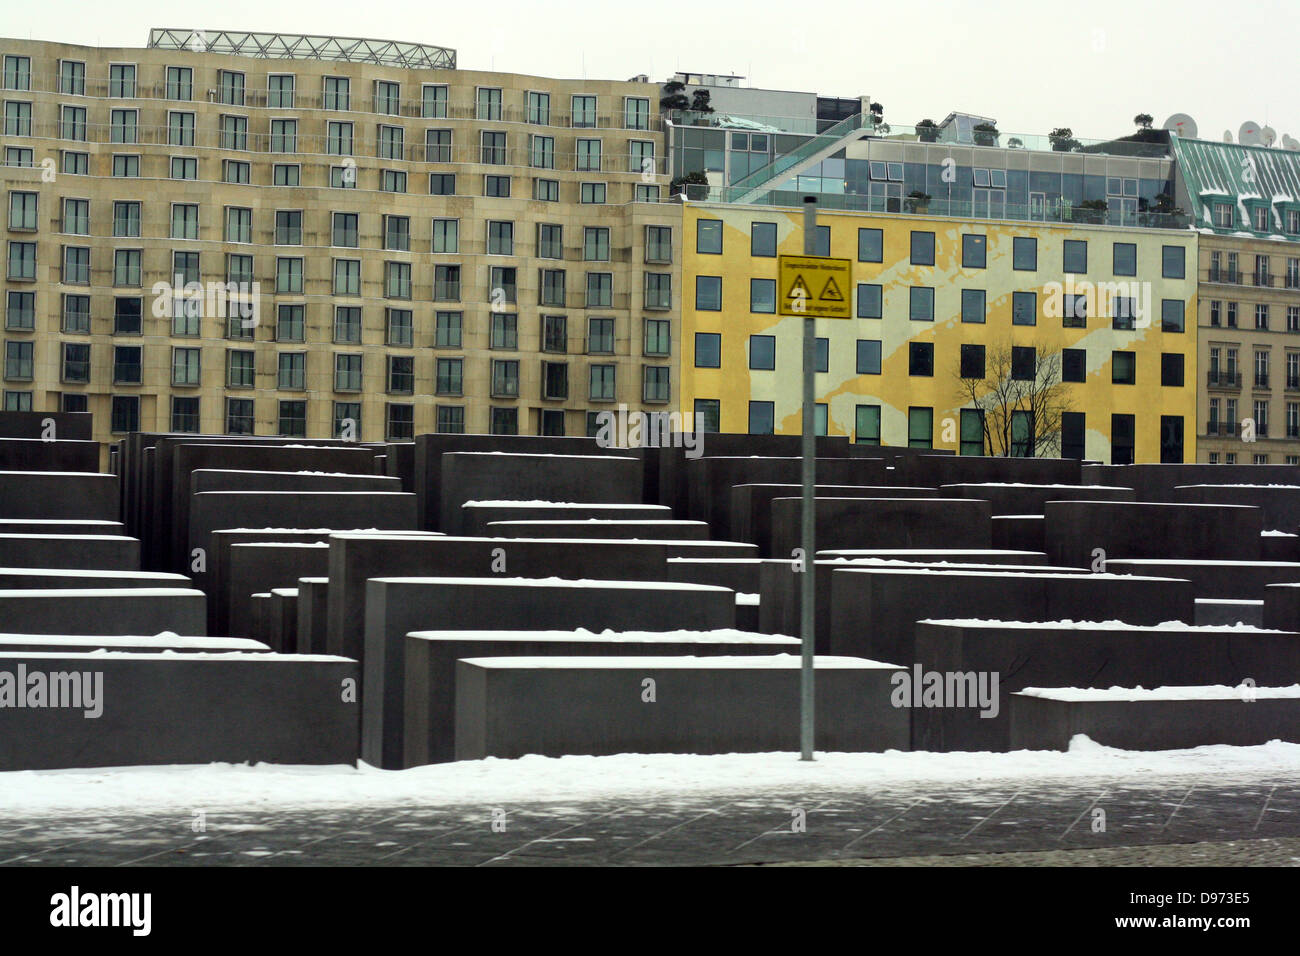 Holocaust Memorial Berlin das Denkmal für die ermordeten Juden Europas, ist ein Mahnmal in Berlin für die jüdischen Opfer des Holocaust, entworfen von Architekt Peter Eisenman und Ingenieur Buro Happold. Stockfoto